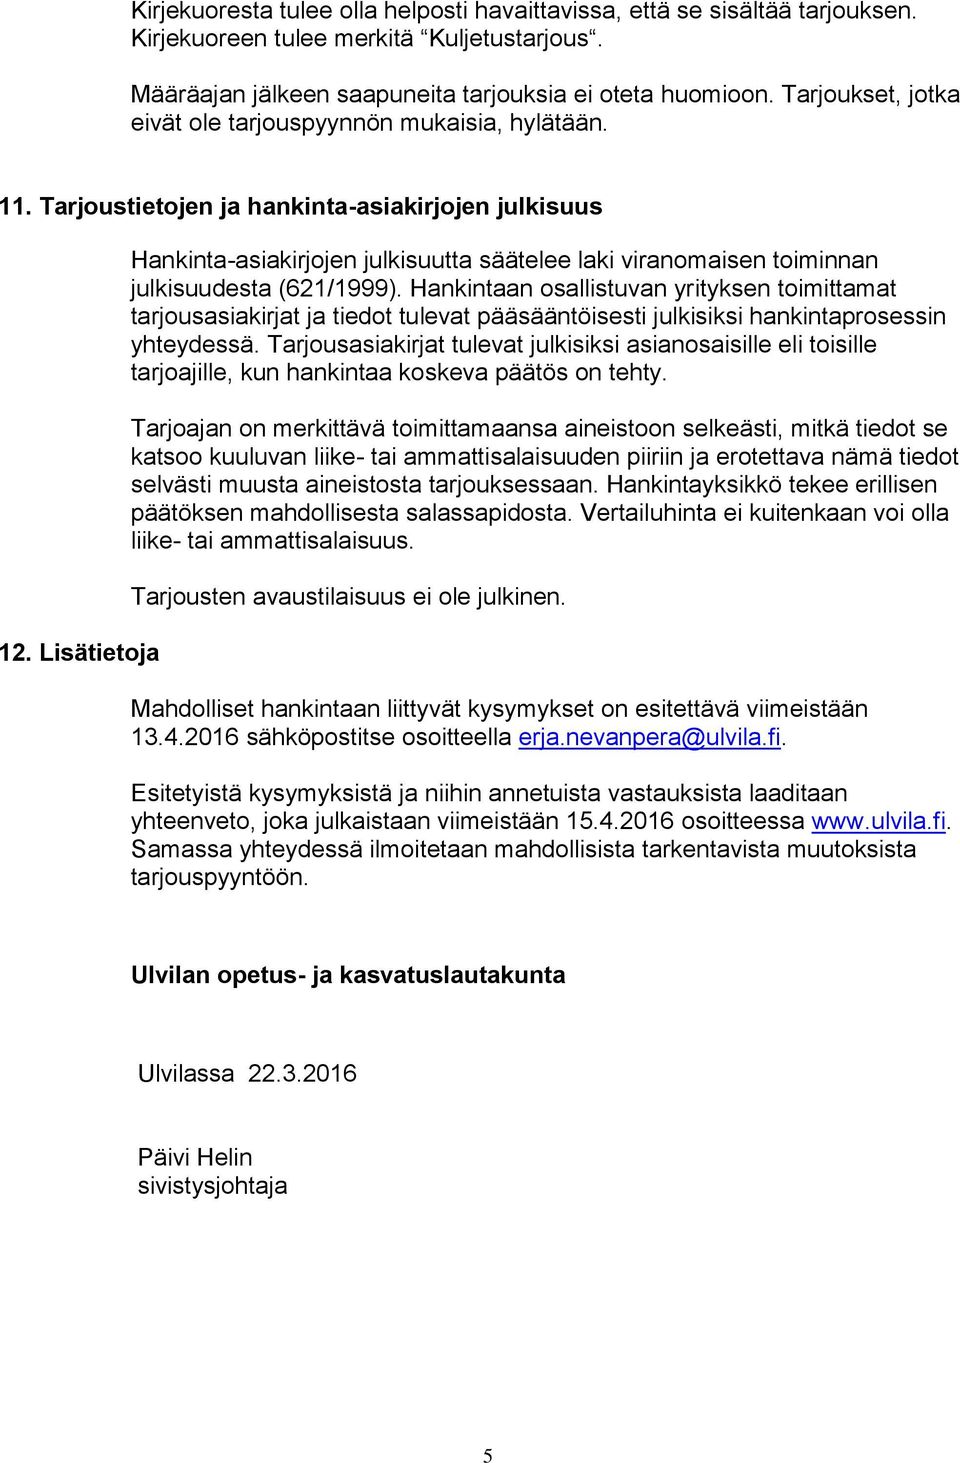 Lisätietoja Hankinta-asiakirjojen julkisuutta säätelee laki viranomaisen toiminnan julkisuudesta (621/1999).